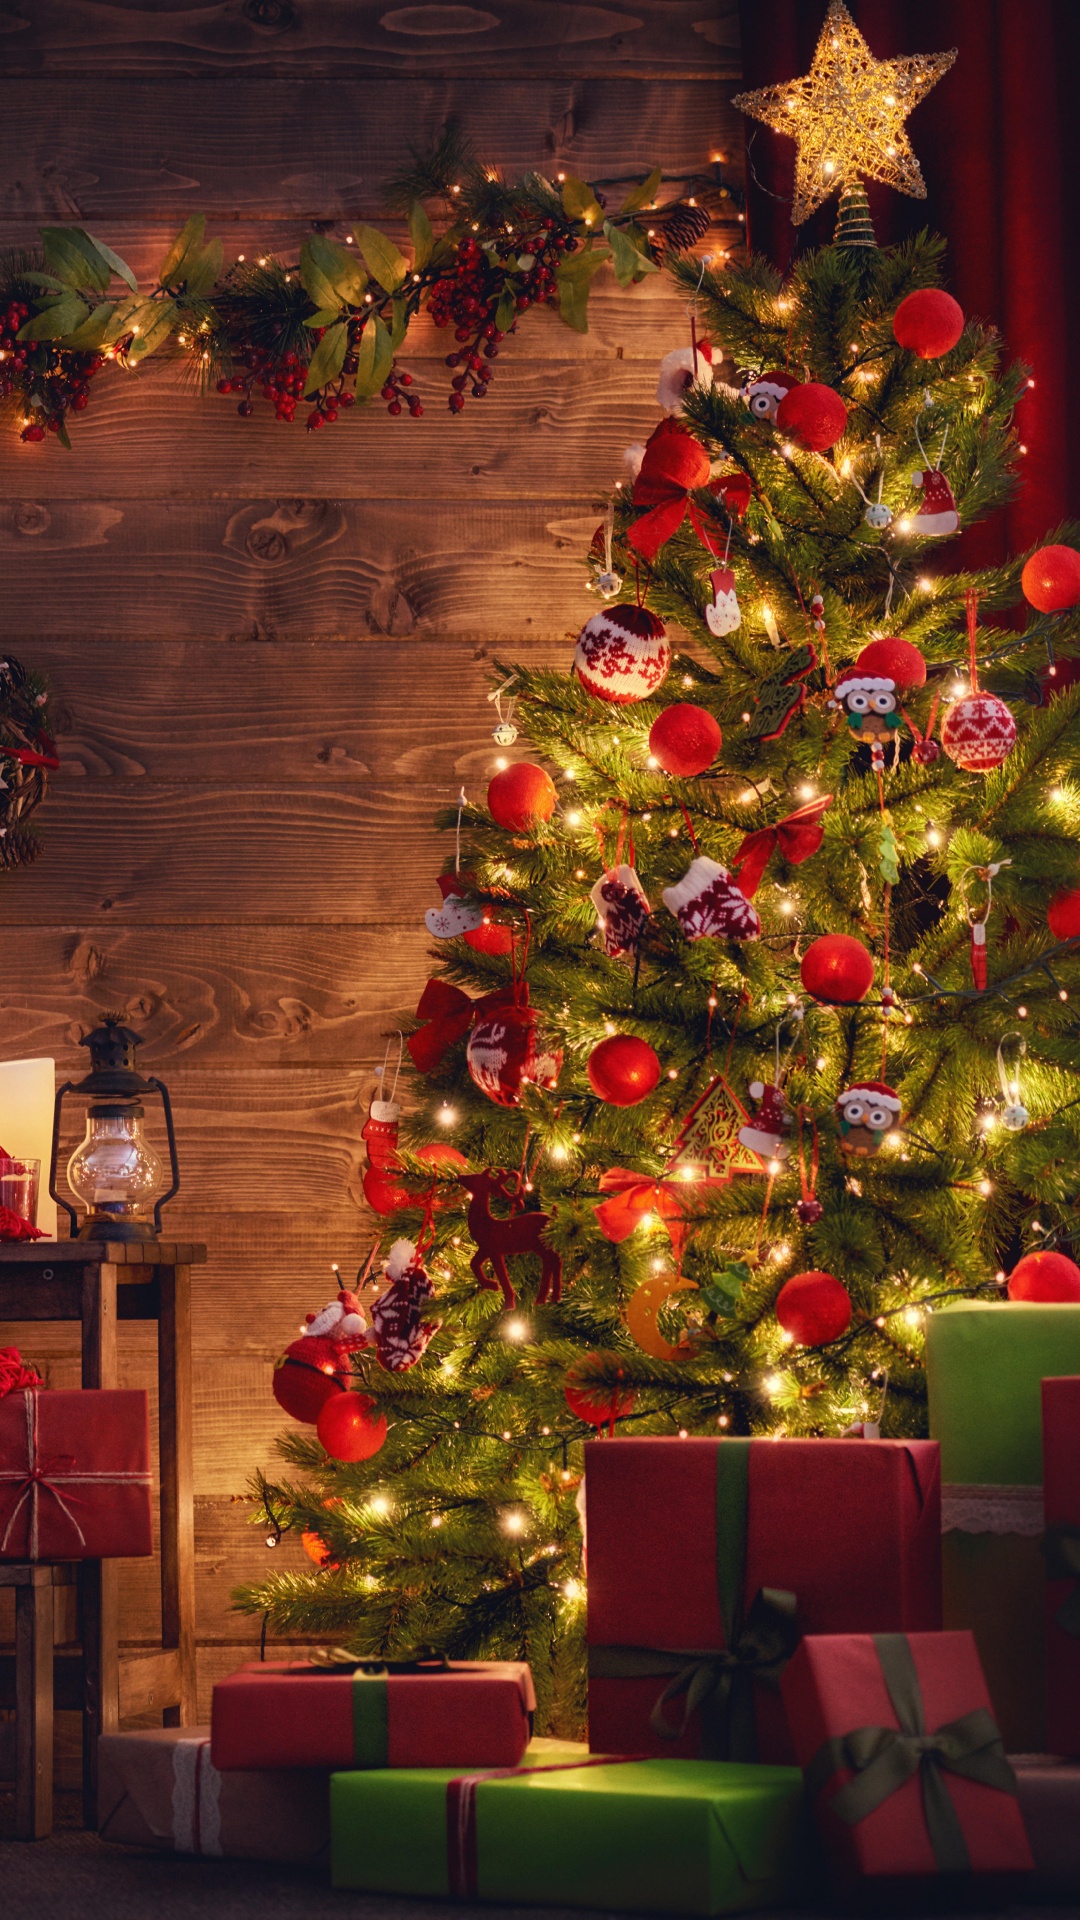 圣诞树, 圣诞节那天, 圣诞装饰, 圣诞节, 圣诞彩灯 壁纸 1080x1920 允许